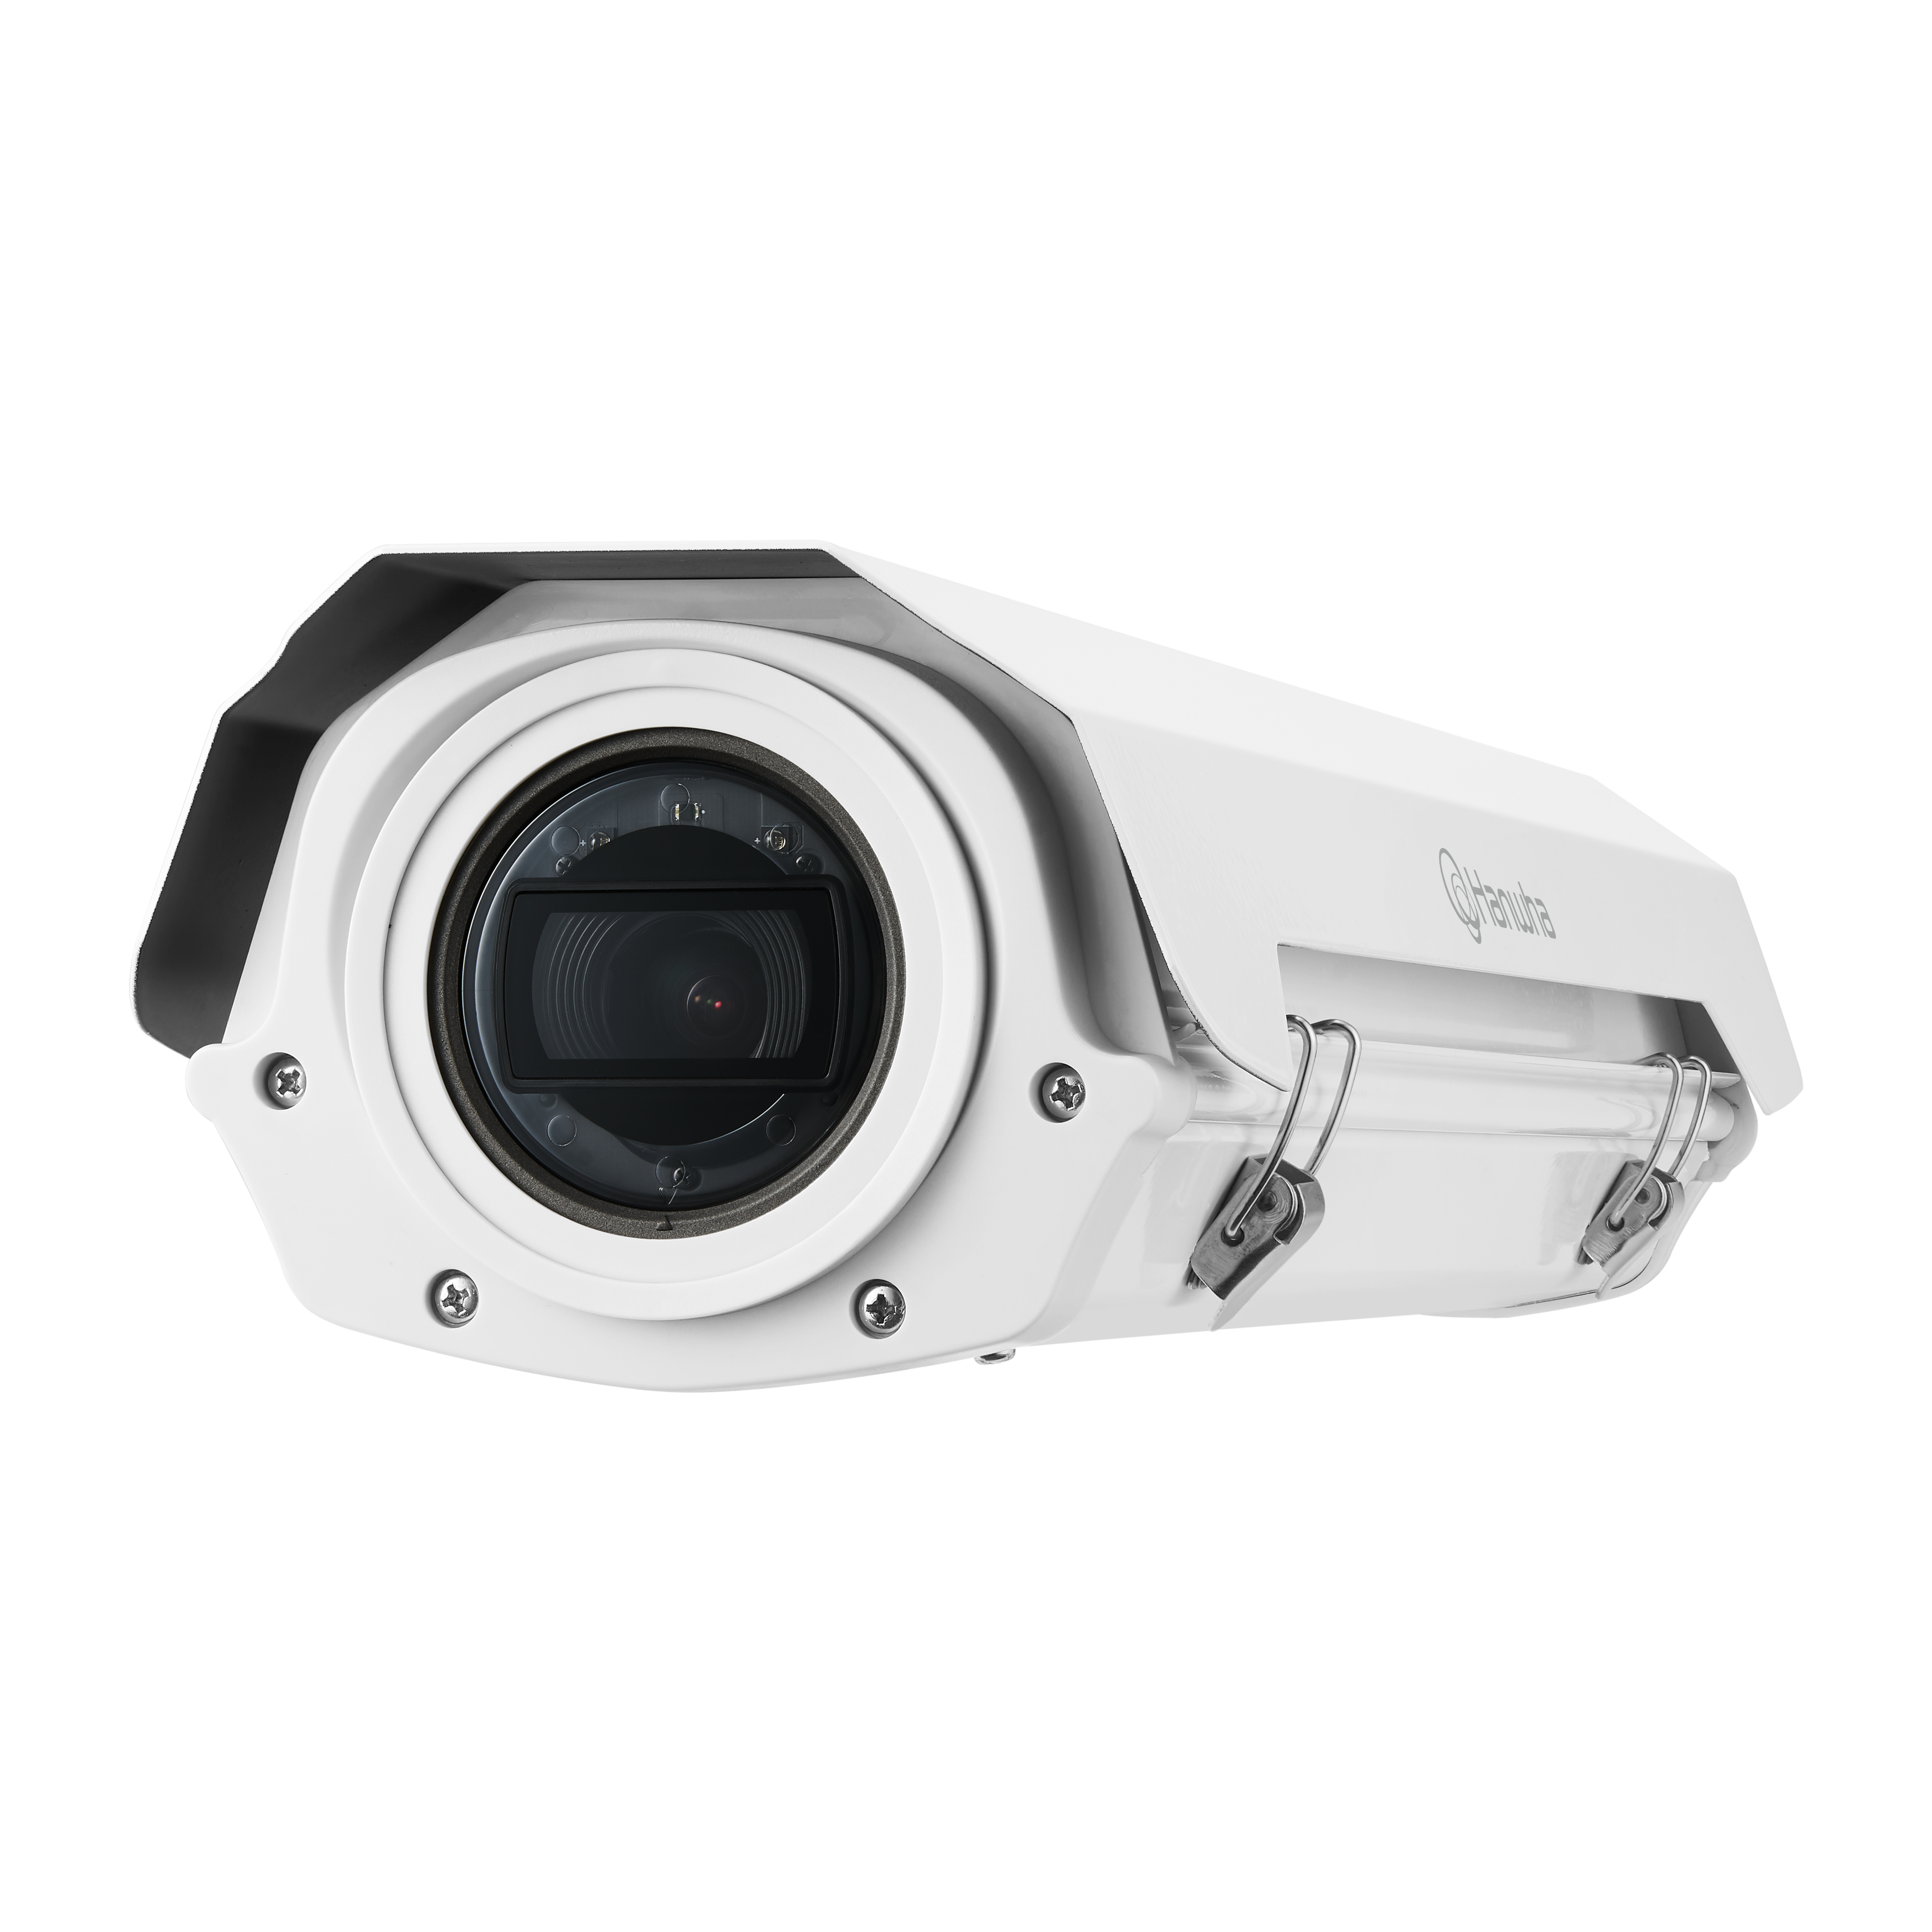 실외 방수QNB-5080RH 5MP IP 하우징 일체형 3배줌 카메라